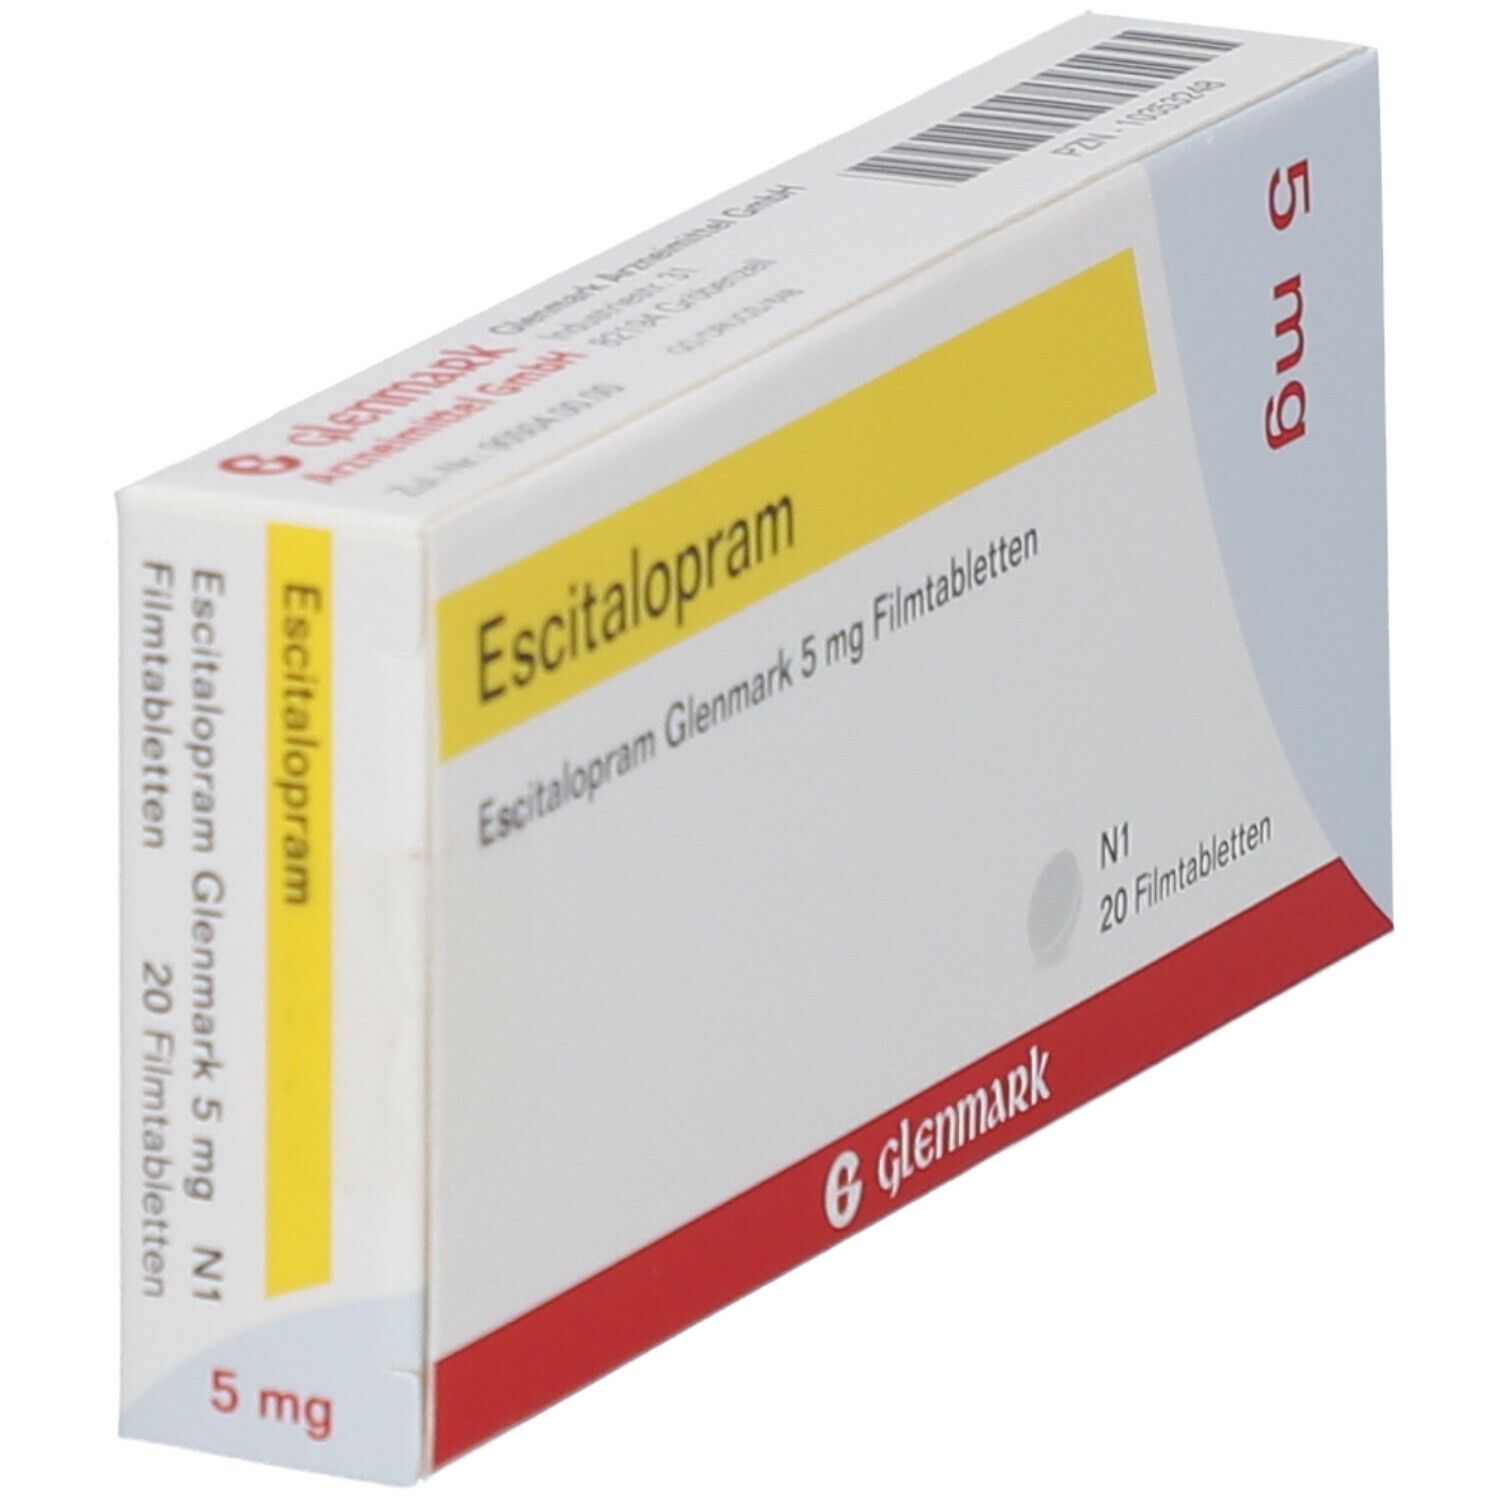 Escitalopram Glenmark 5 mg